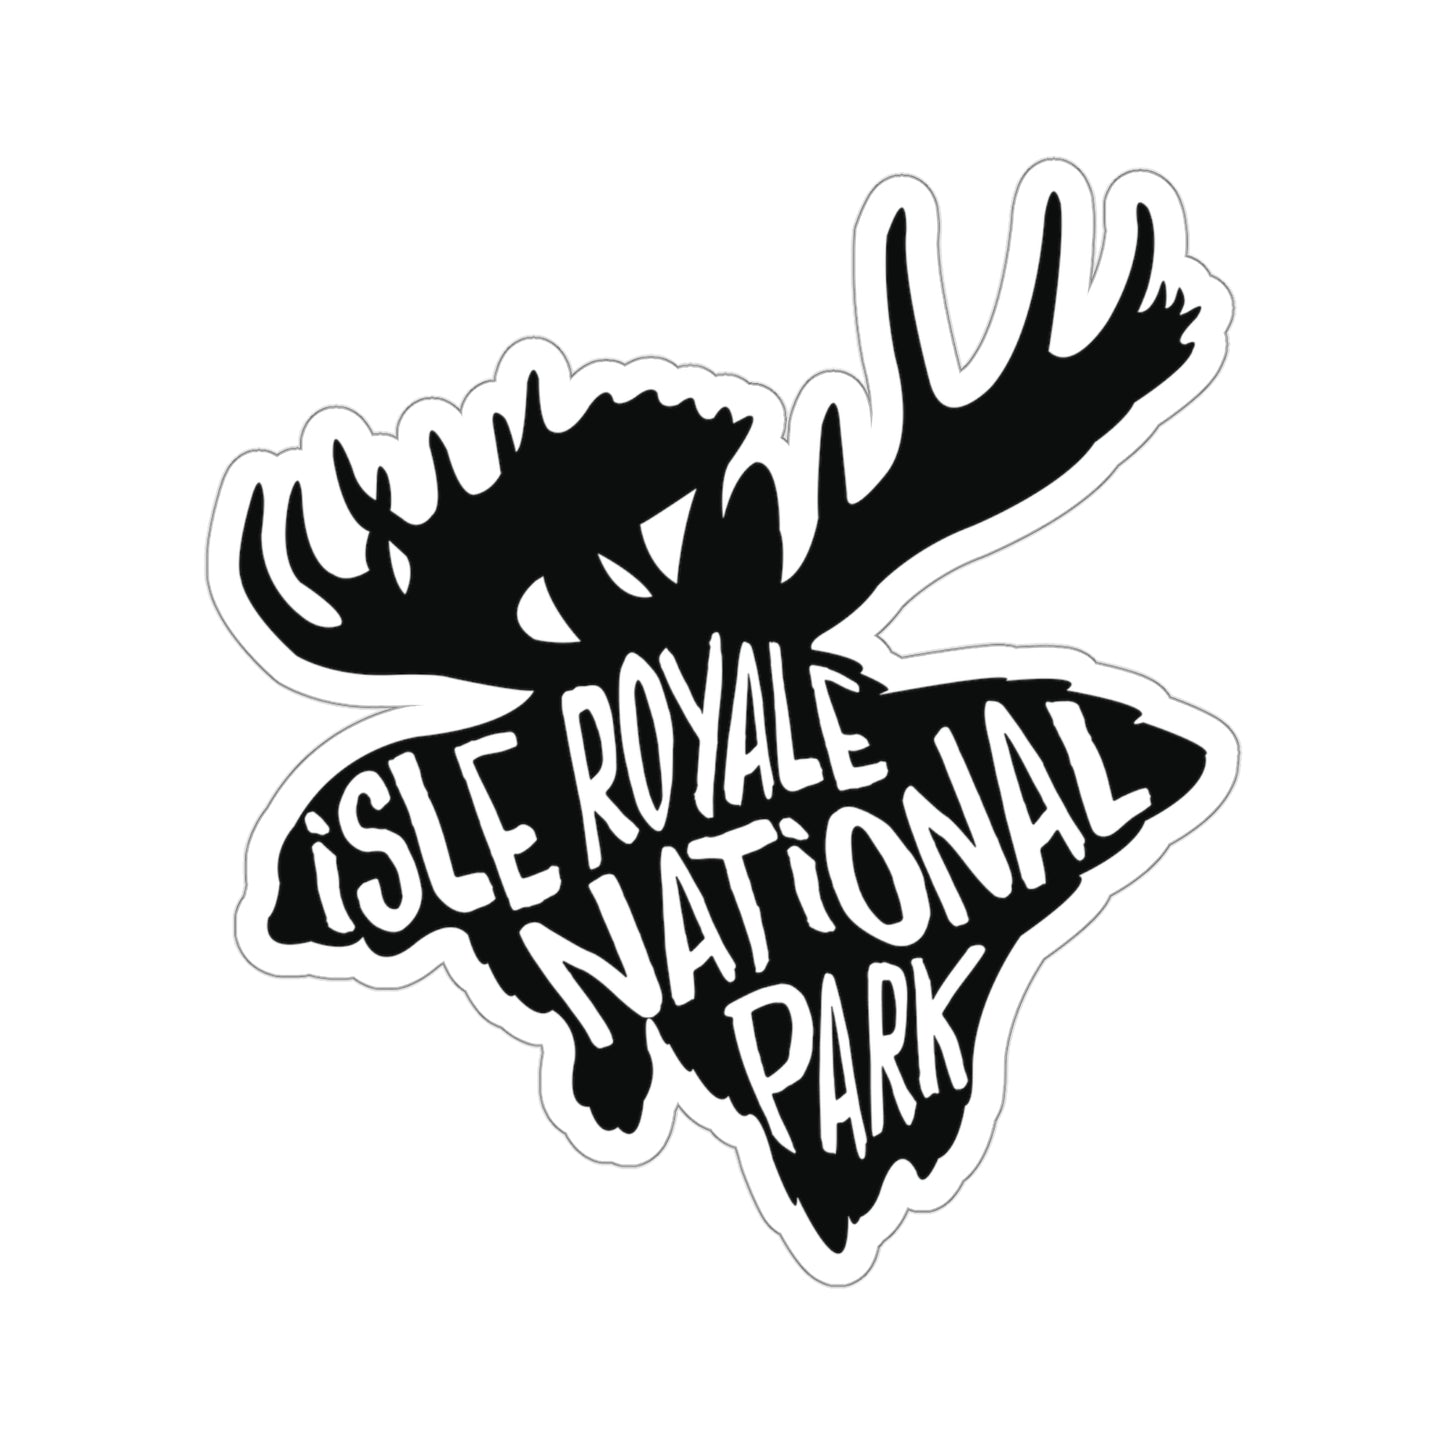 Isle Royale National Park Sticker - Moose